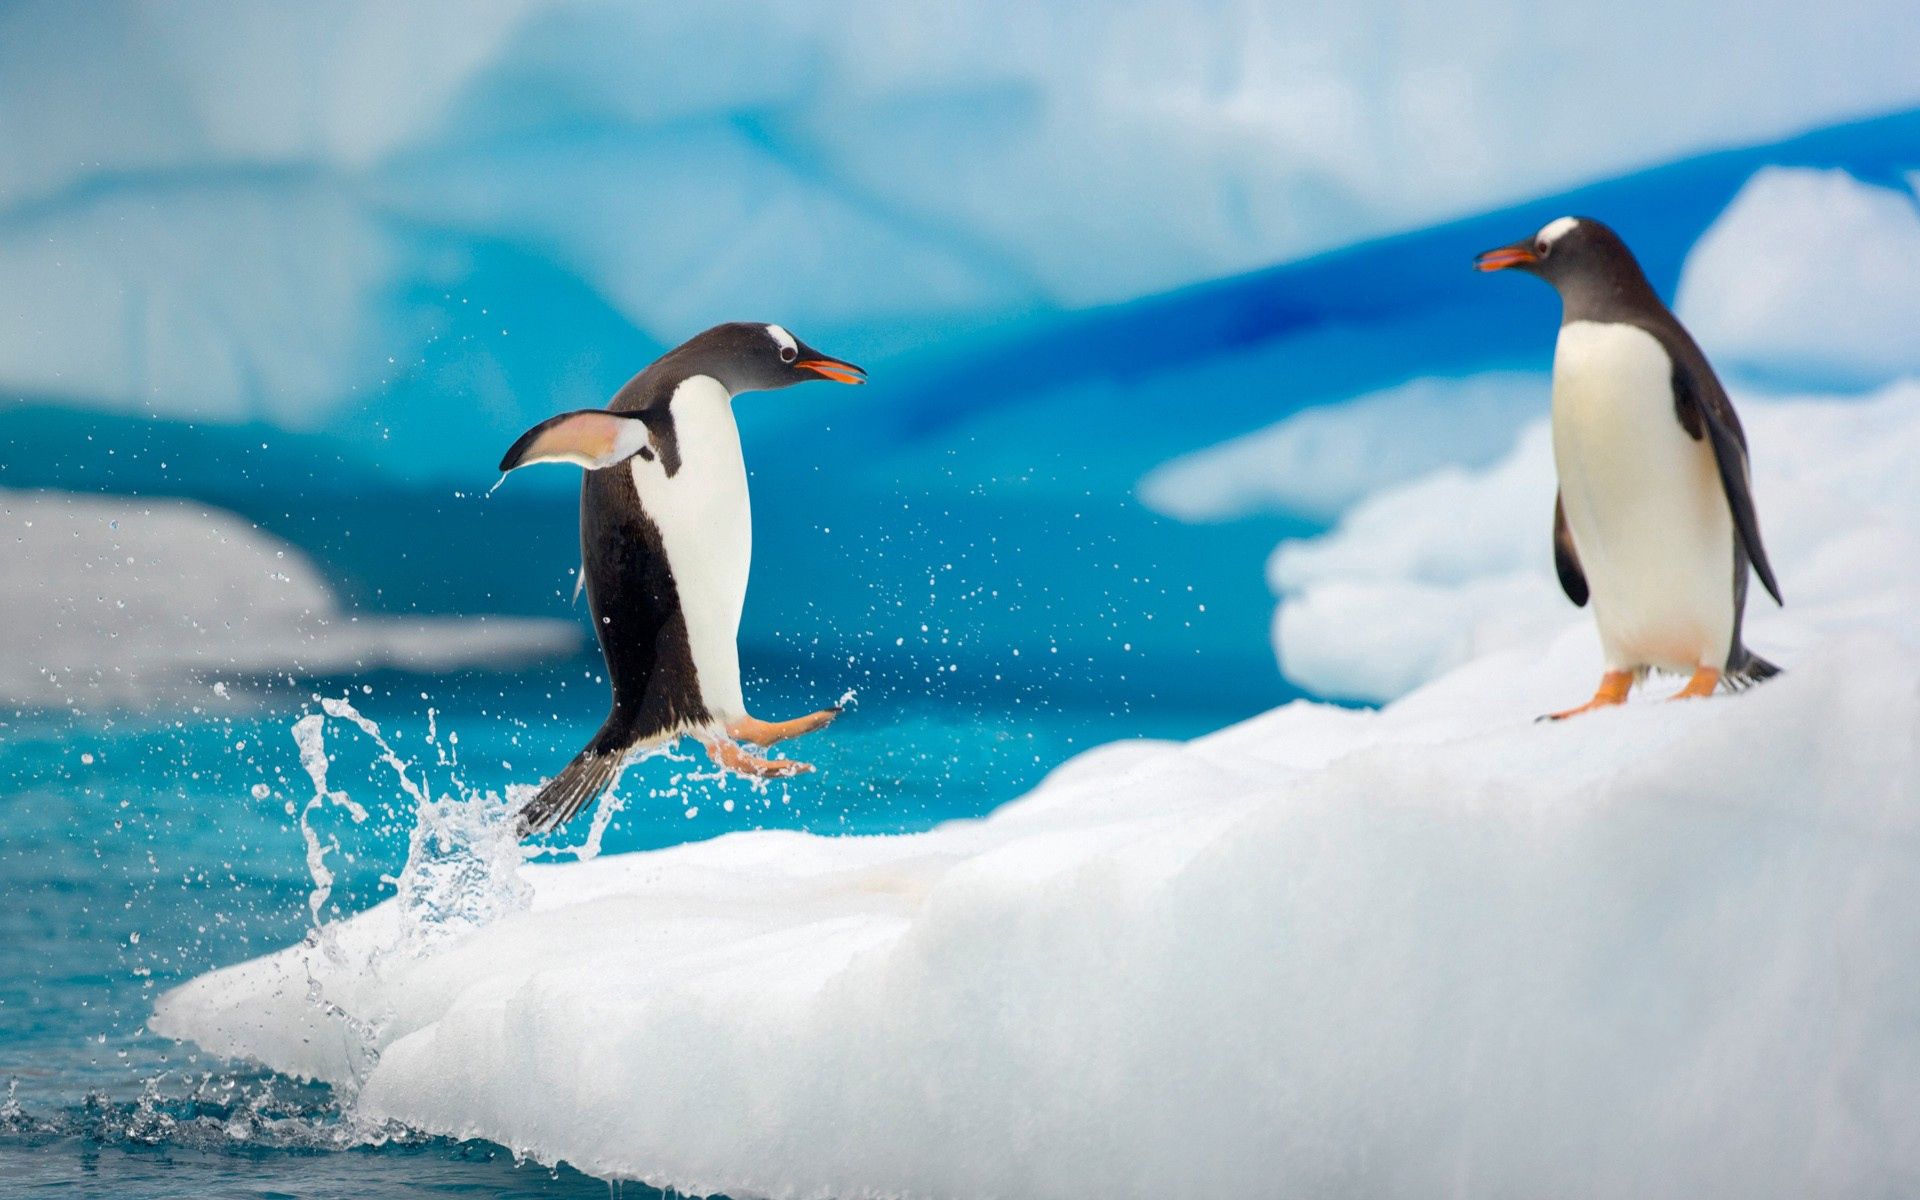 Скачать обои бесплатно Снег, Арктика, Лед, Прыжок, Животные, Пара, Антарктида, Пингвины картинка на рабочий стол ПК